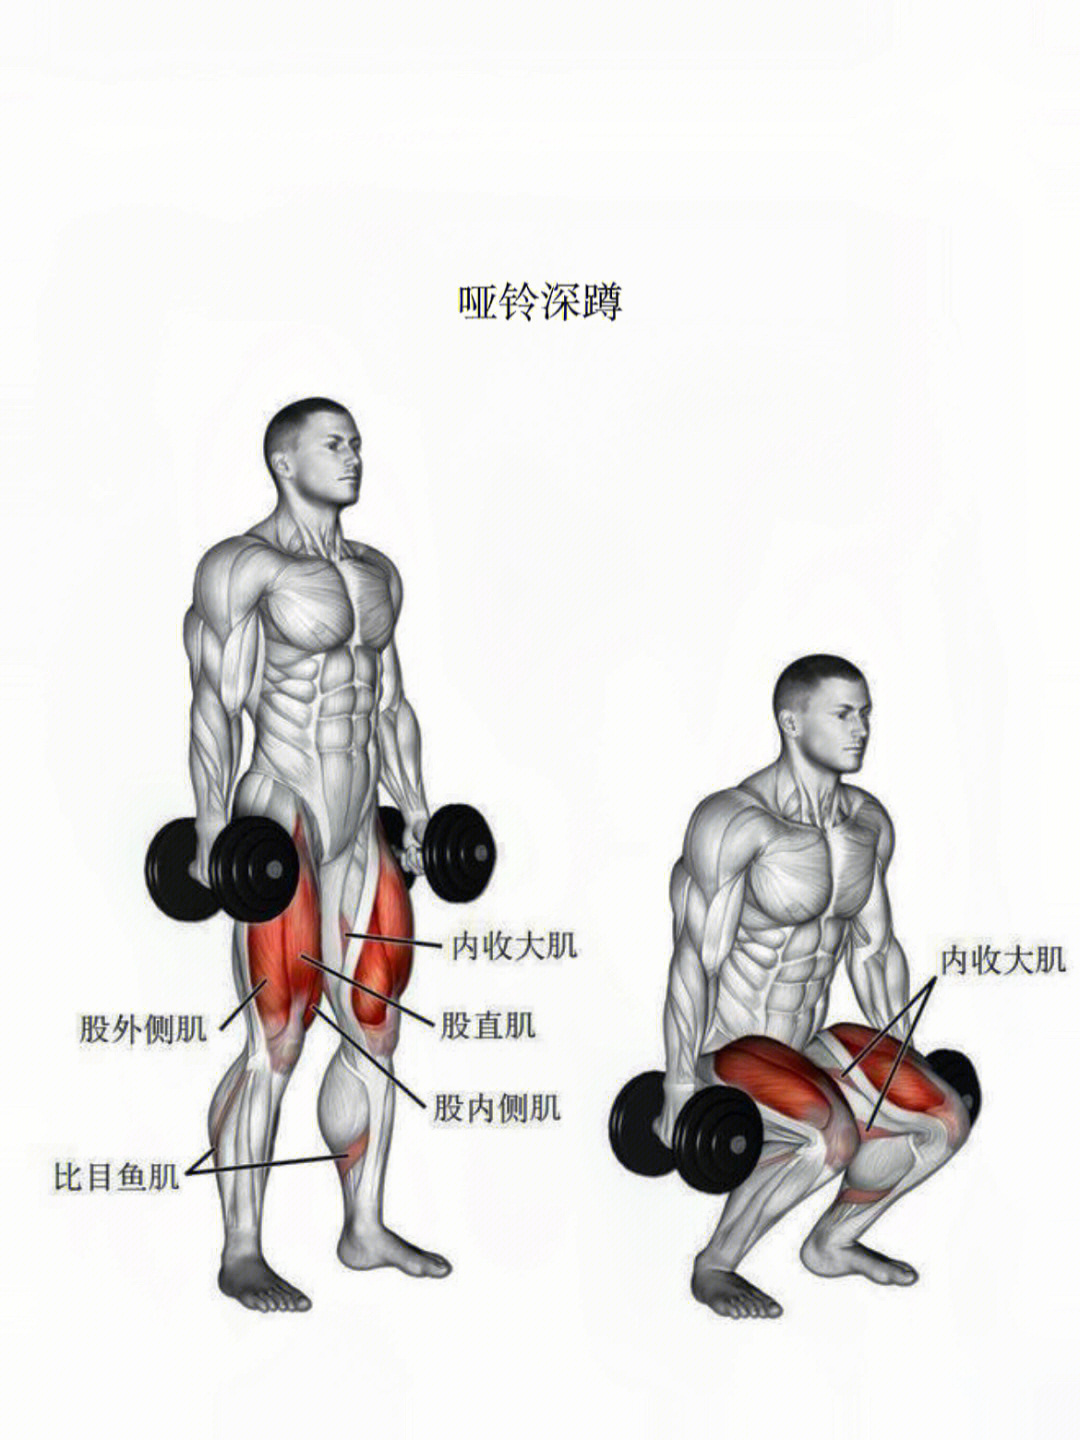 今日动作分享:哑铃深蹲训练肌肉部位:股四头肌,腘绳肌,小腿肌群01